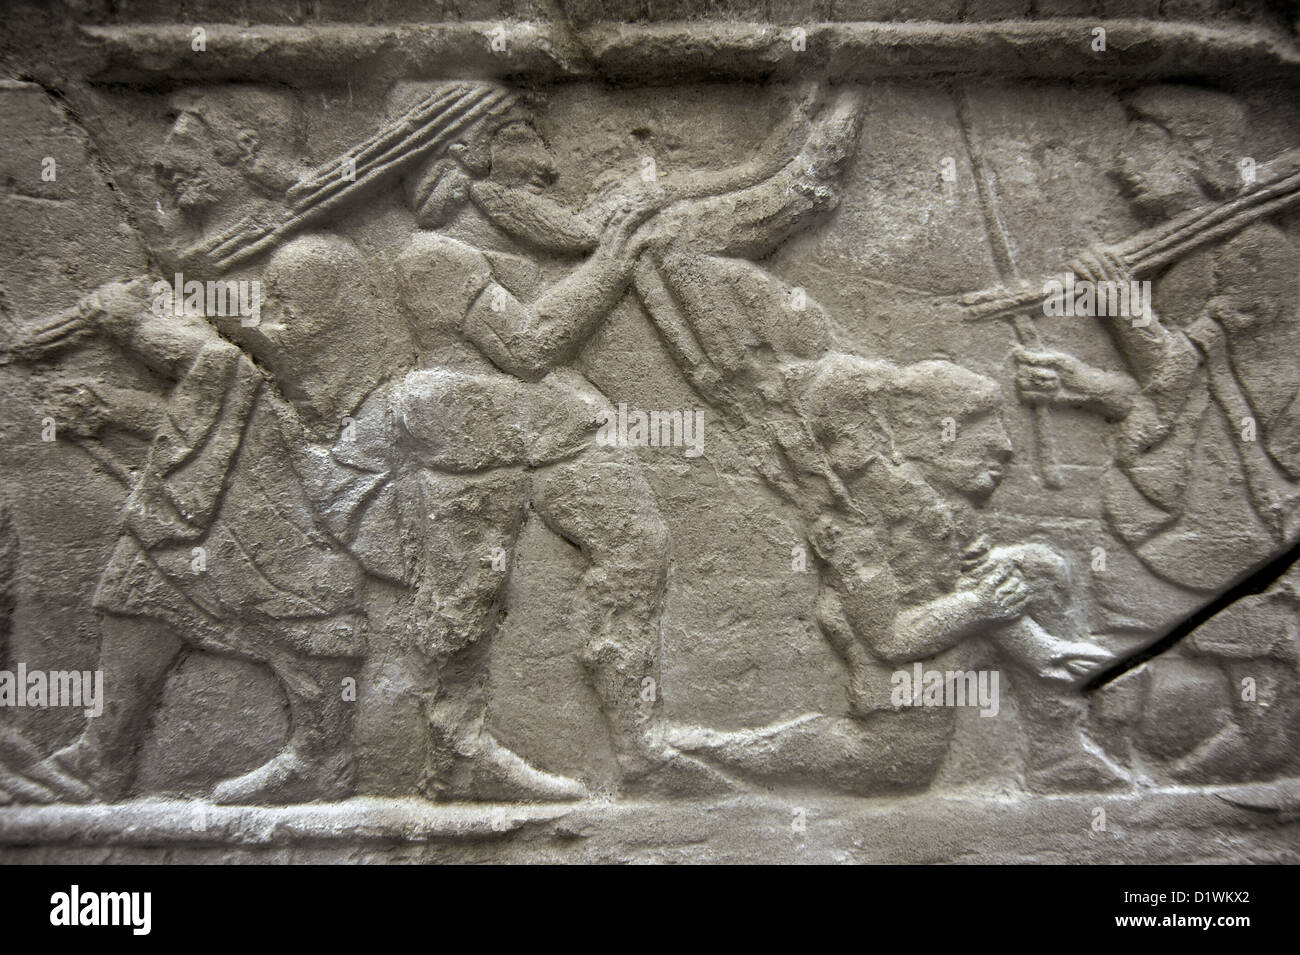 De base avec des reliefs étrusques de stèles funéraires sur les jeux. Au début du 5e siècle avant J.-C.. Détail. Musée des beaux-arts de Budapest. Banque D'Images